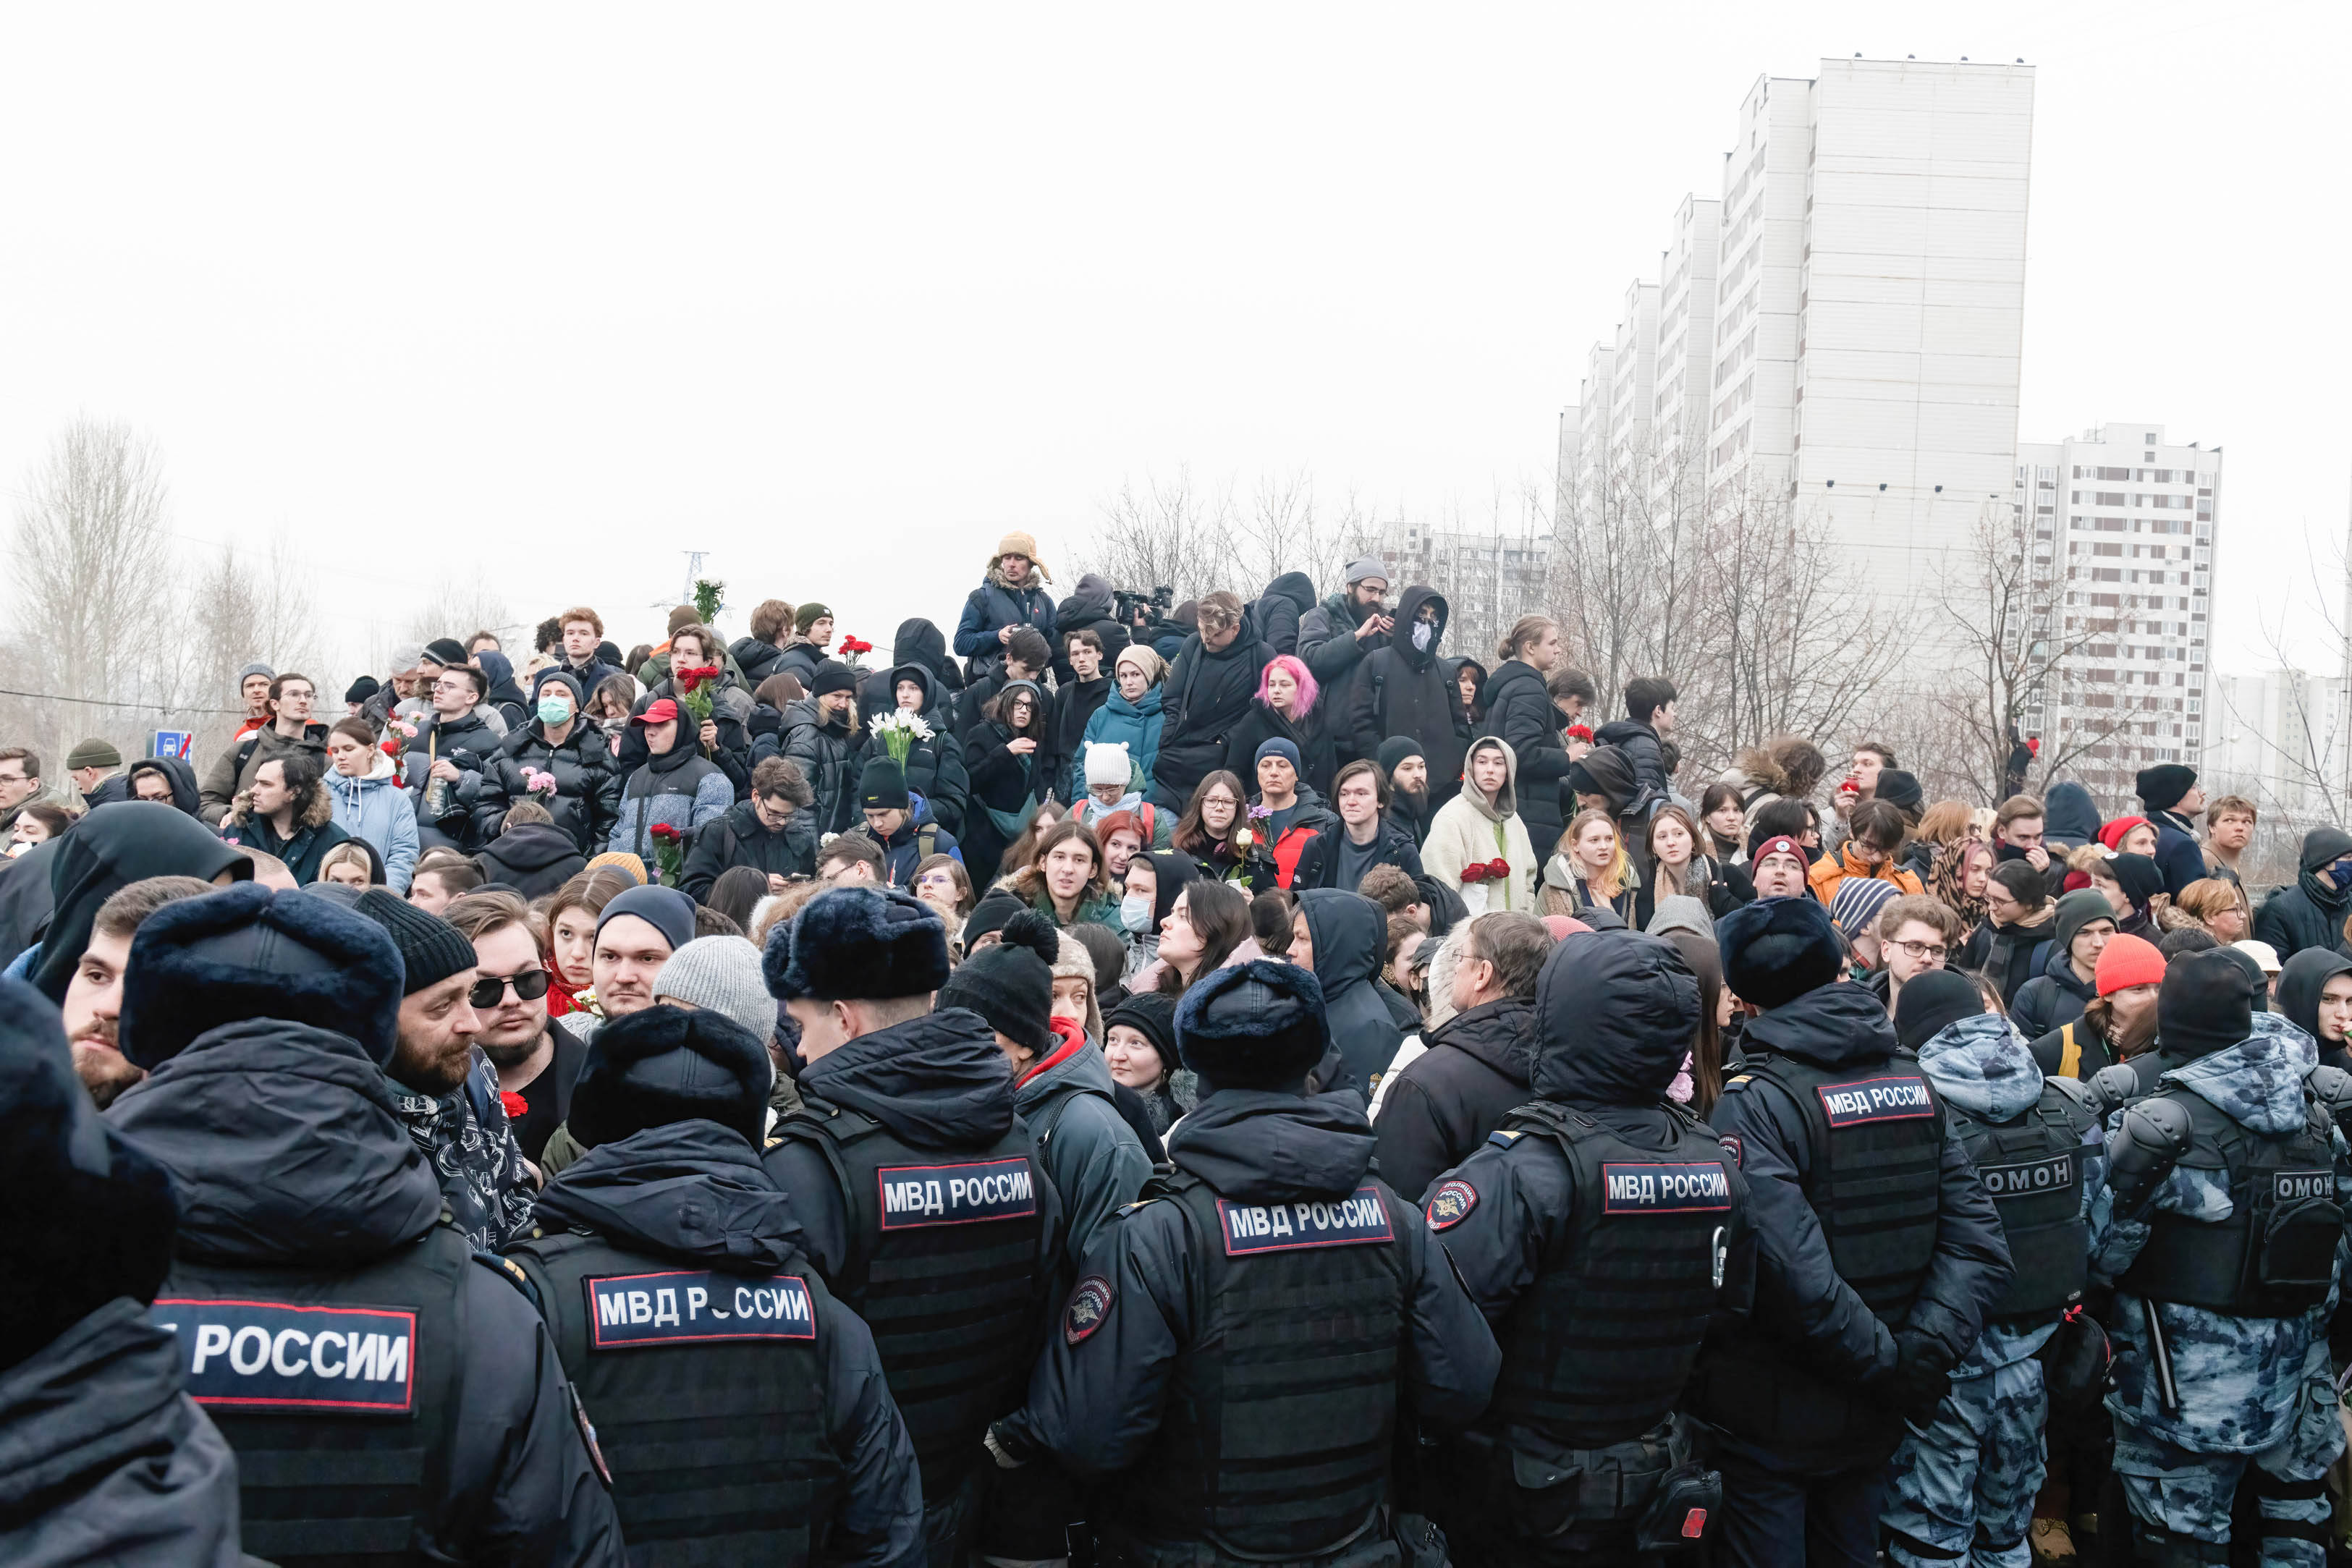 Szenen wie diese sind selten im heutigen Russland: Am Tag der Beerdigung von Alexei Nawalny versammelten sich tausende Menschen in Solidarität.